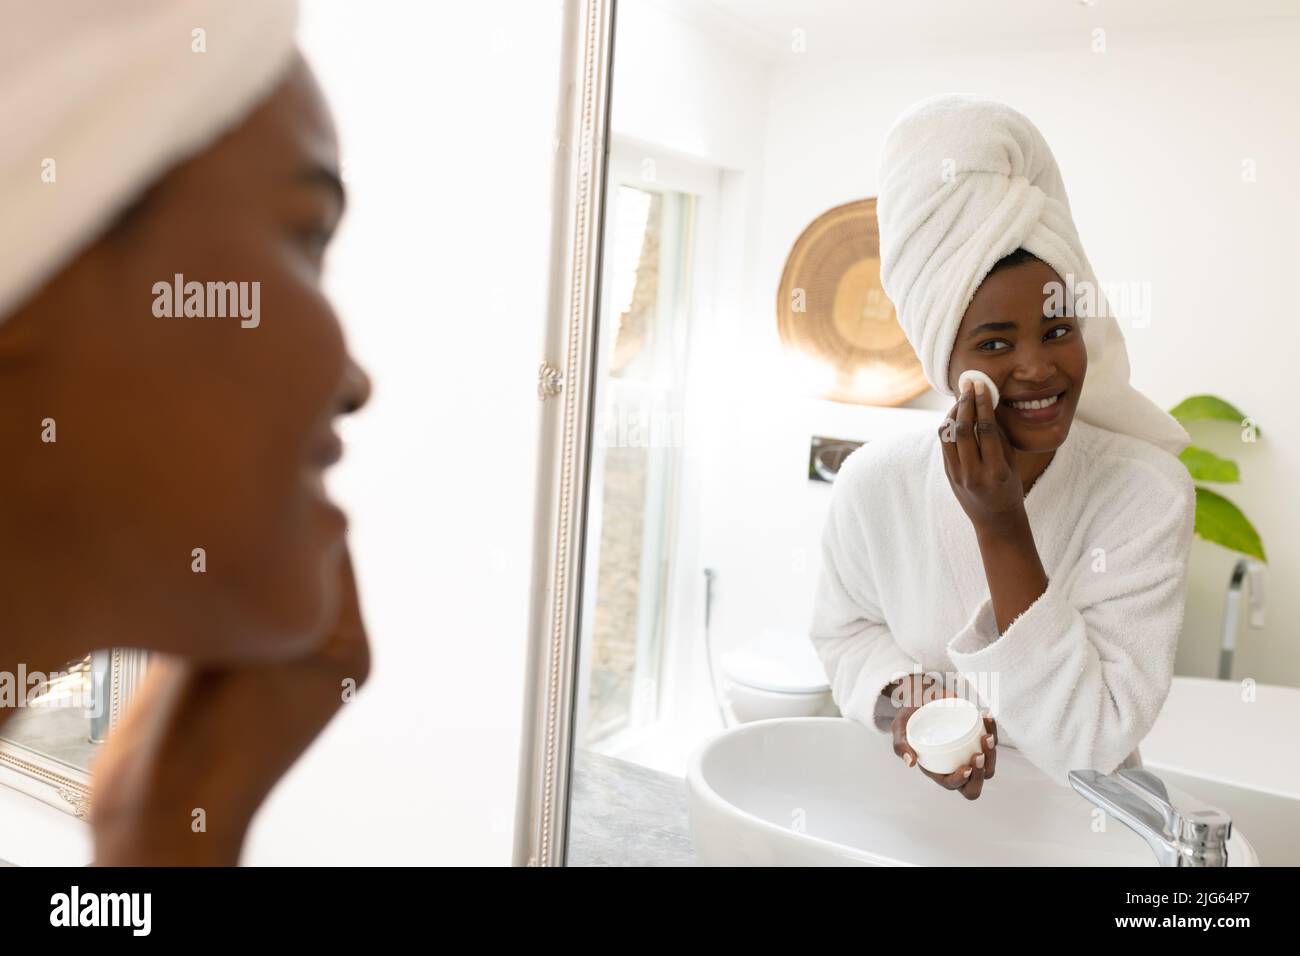 Sonriente joven afroamericana aplicando producto de belleza mientras mira en el espejo en el cuarto de baño Foto de stock